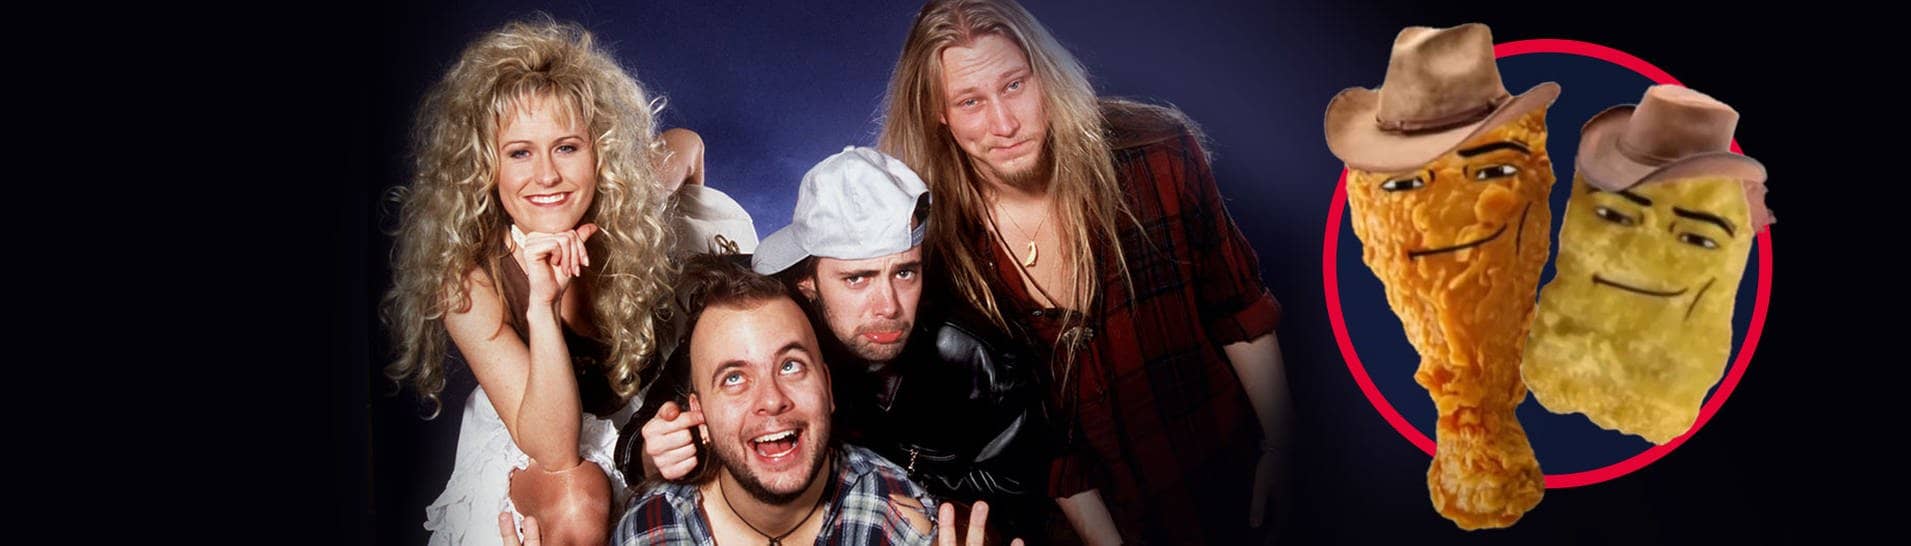 Die schwedische Band Rednex 1995 in Dortmund, durch eine Cover-Version mit einem Comedy-Video mit Chicken Nuggets geht ihr Song „Cotton Eye Joe“ viral (Foto: picture-alliance / Reportdienste, Youtube: MegaBen)